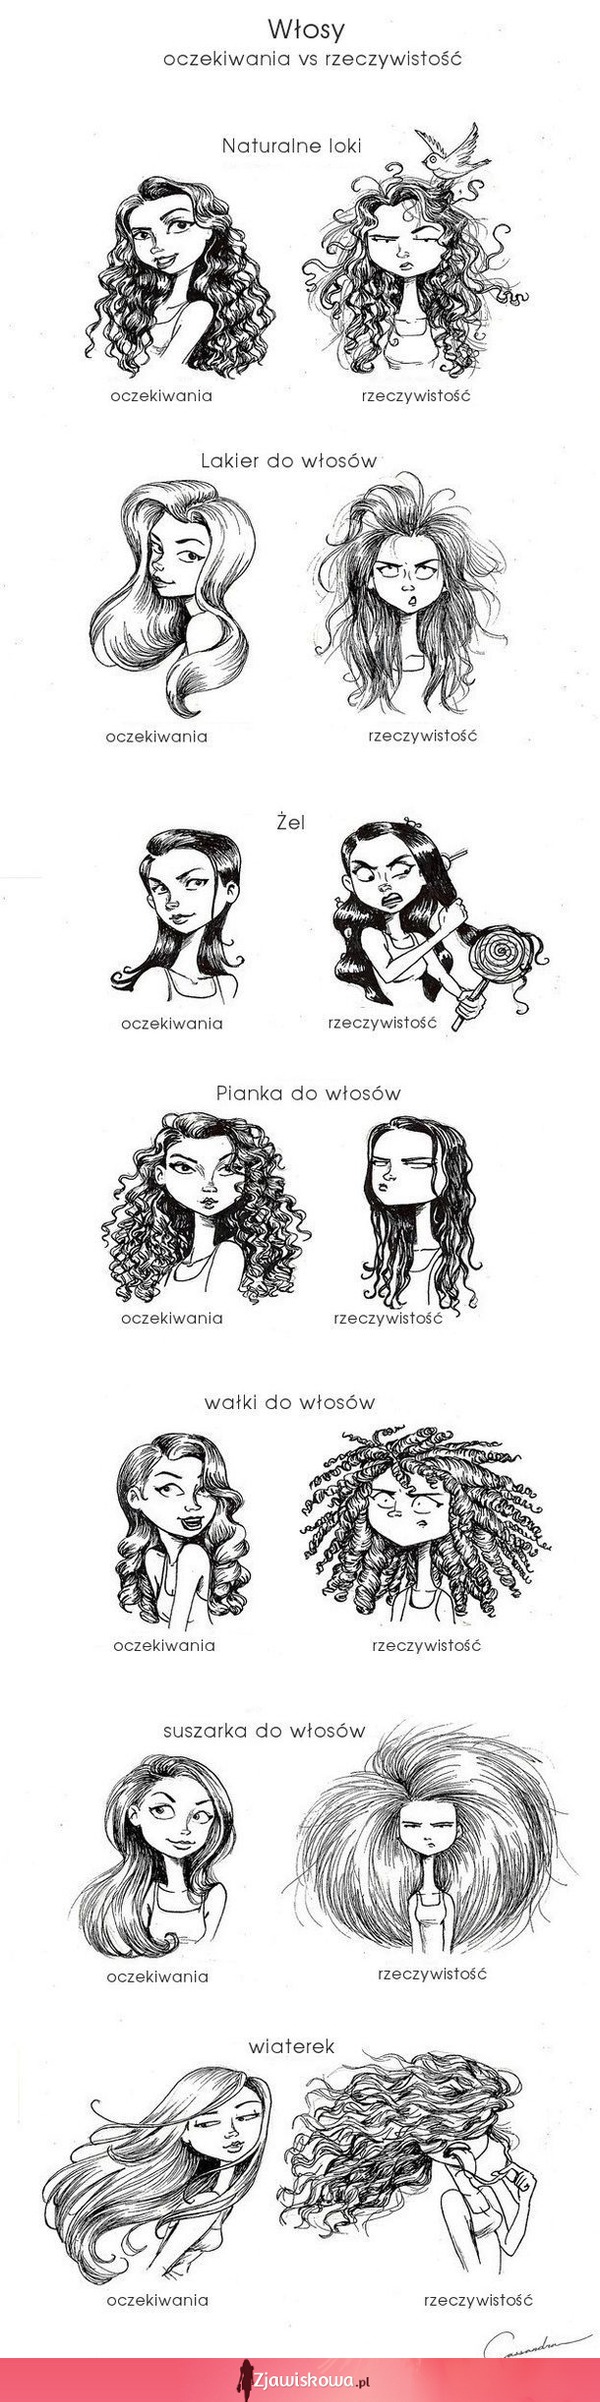 Dziewczyny i ich problem z włosami! PRAWDA! XD